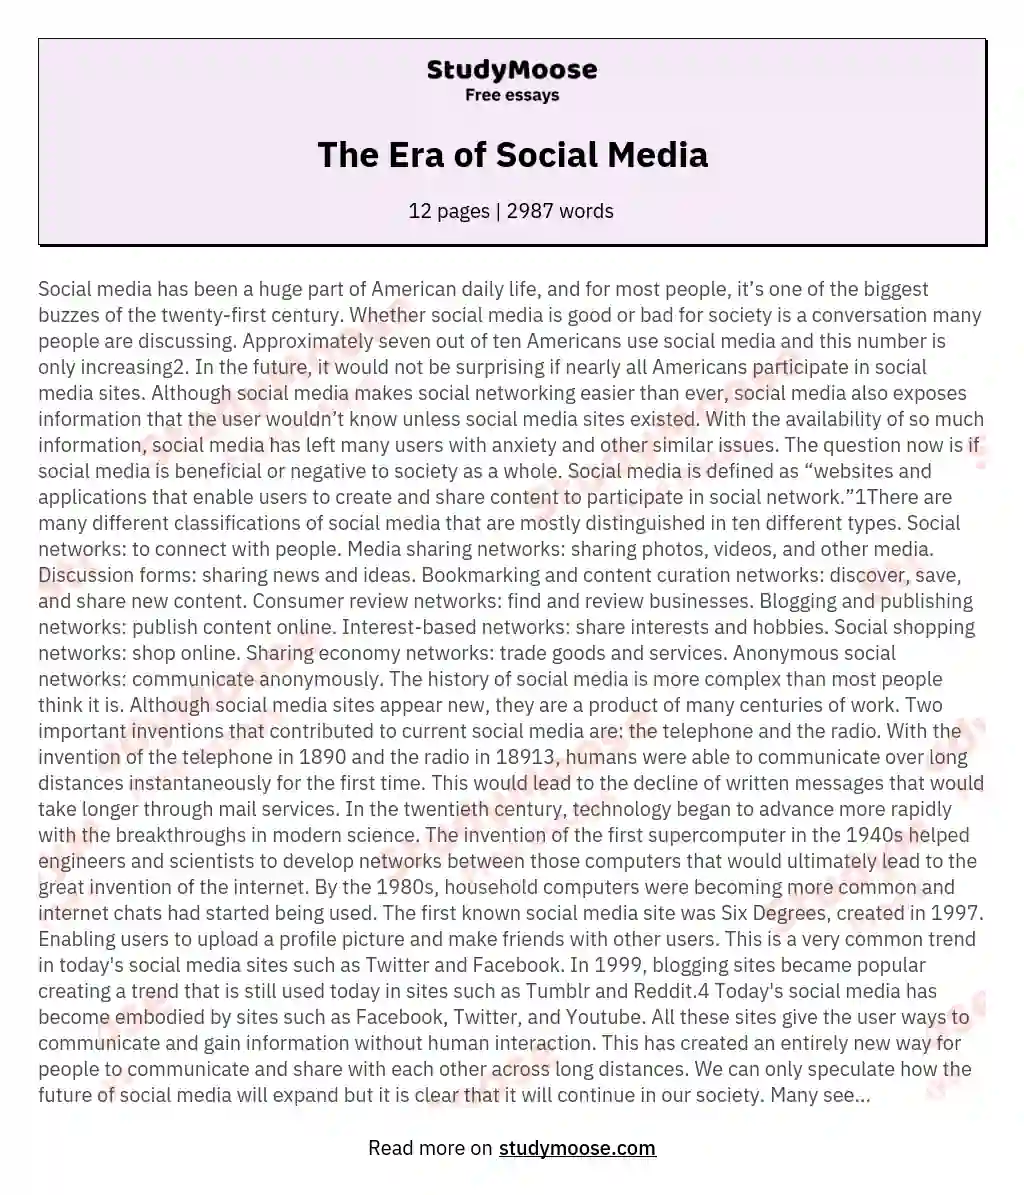 The Era of Social Media essay